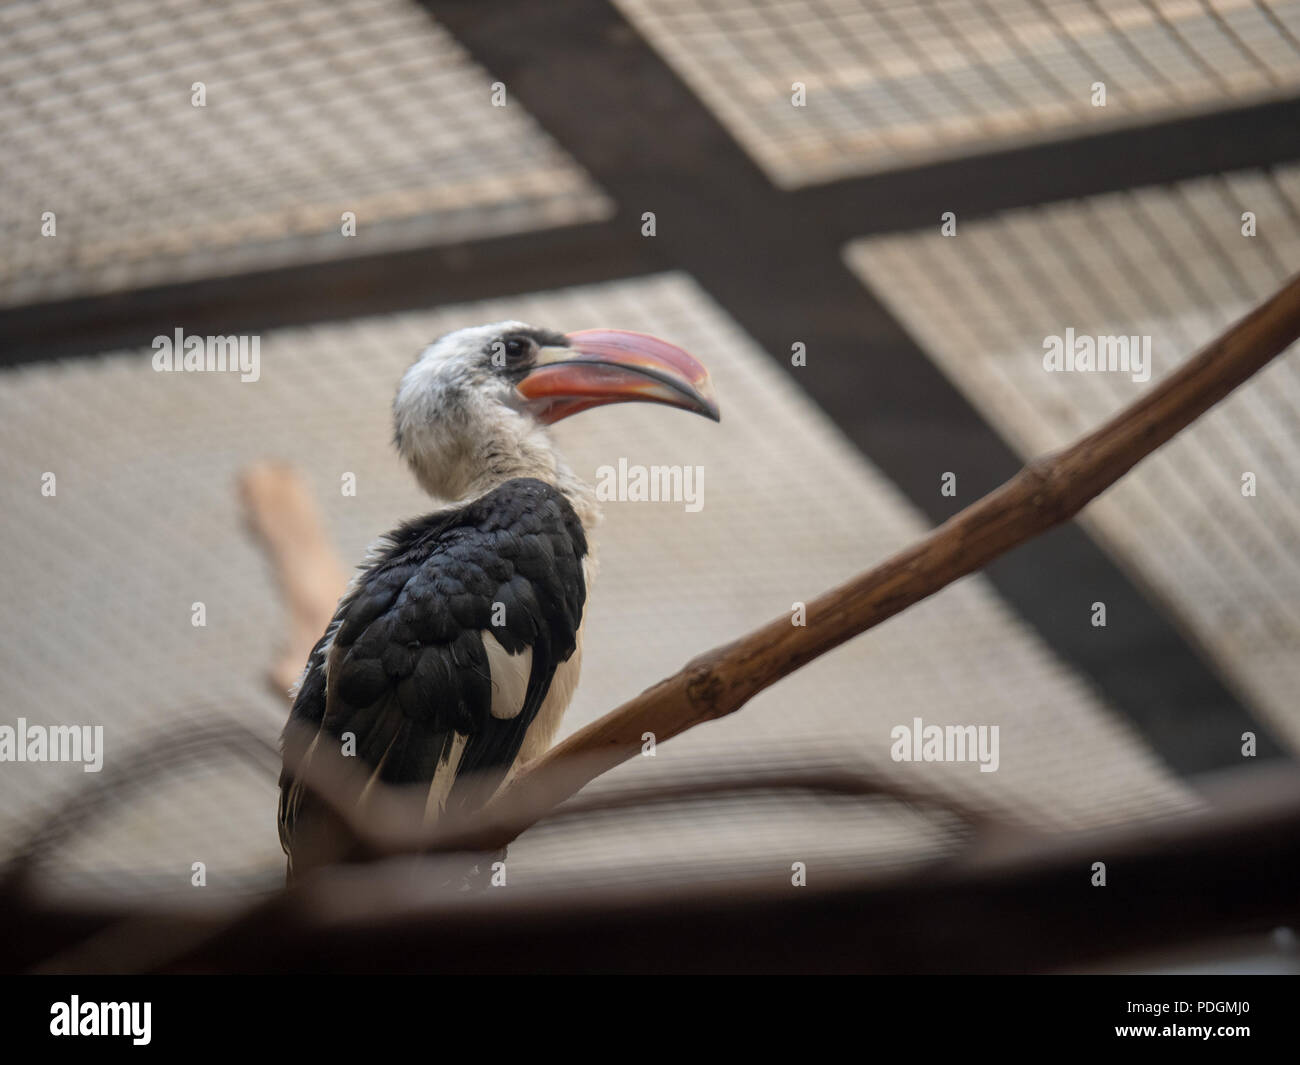 Von der Decken s hornbill tockus deckeni sits inside of a cage at a zoo exhibit  Stock Photo